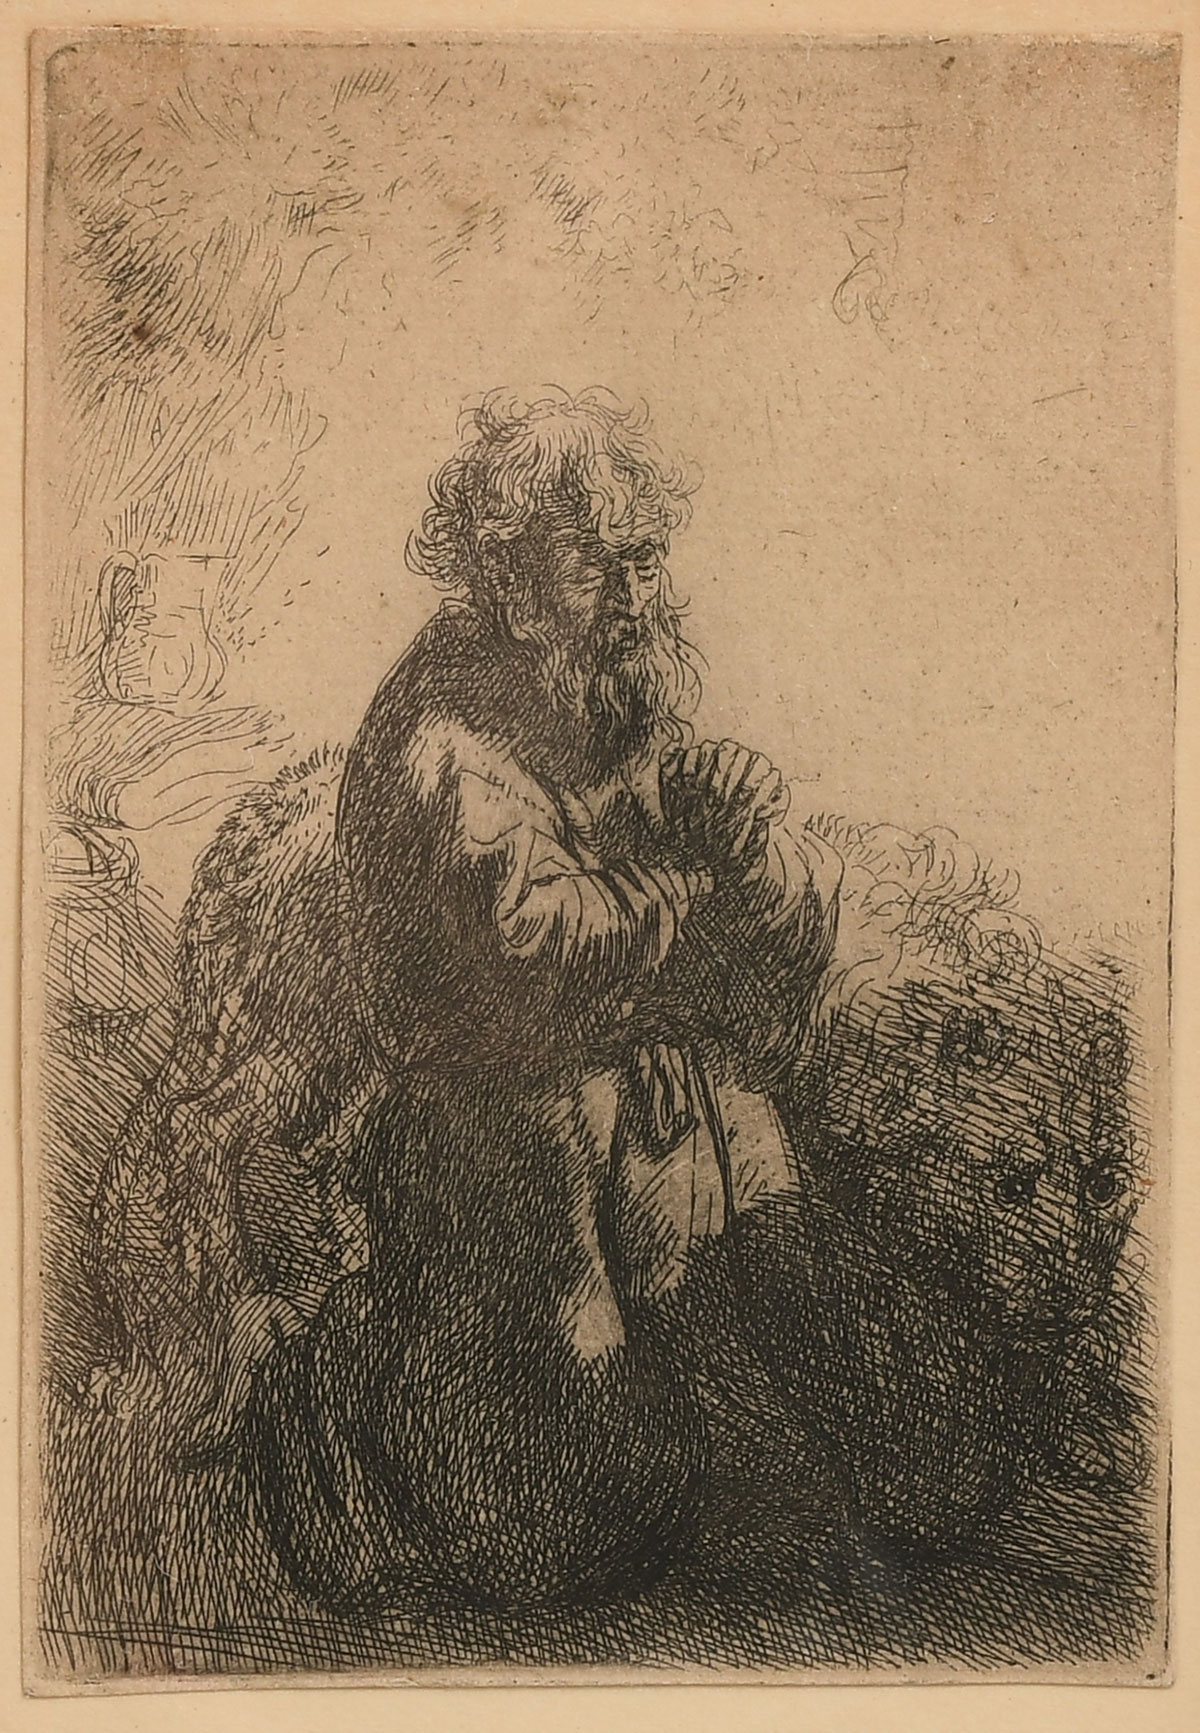 VAN RIJN, Rembrandt, (Dutch, 1606-1669):